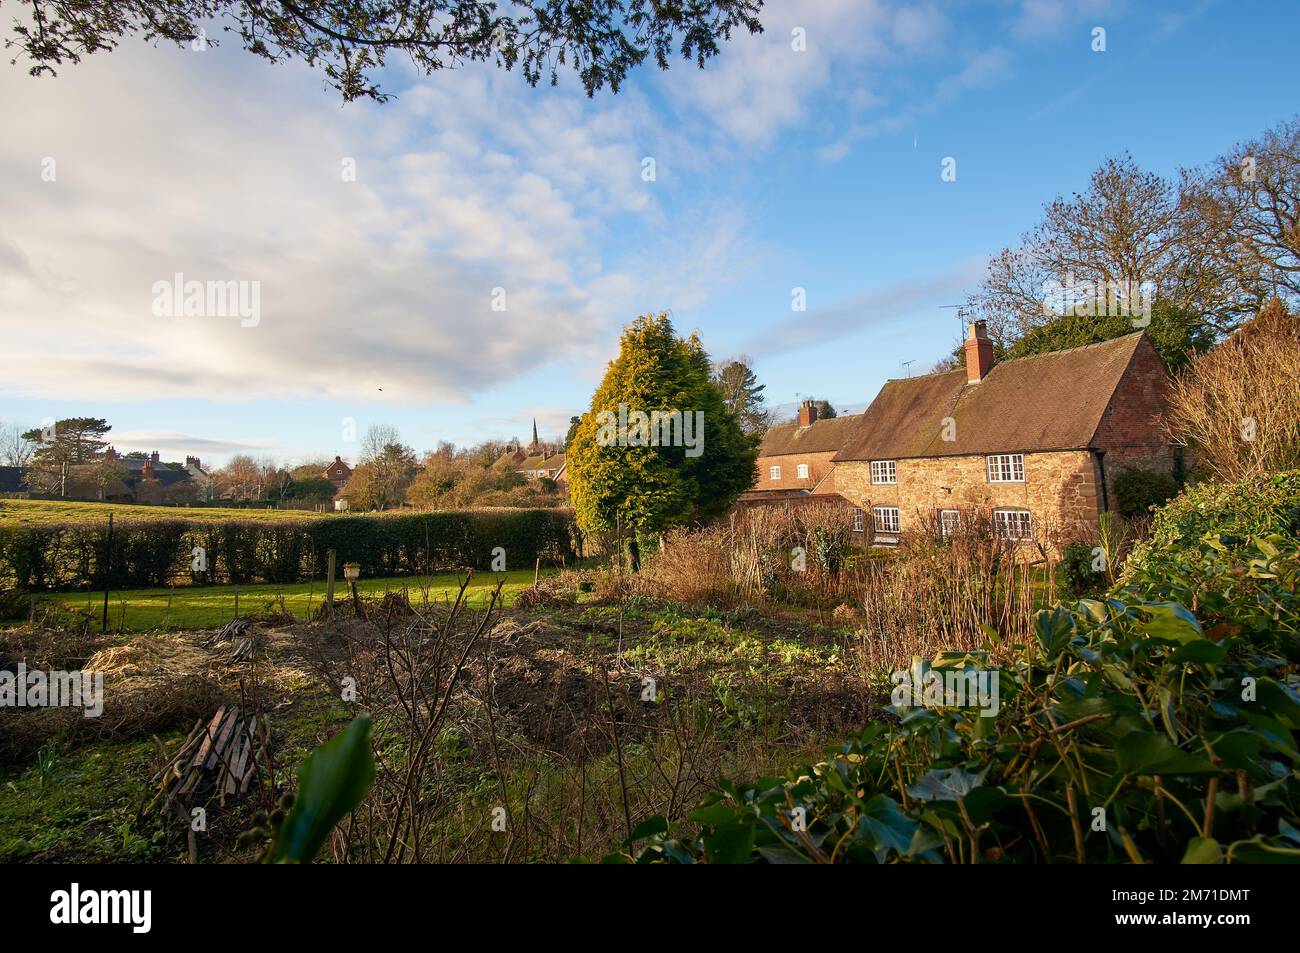 Casa rurale e giardino sul retro a Ticknall, Regno Unito Foto Stock